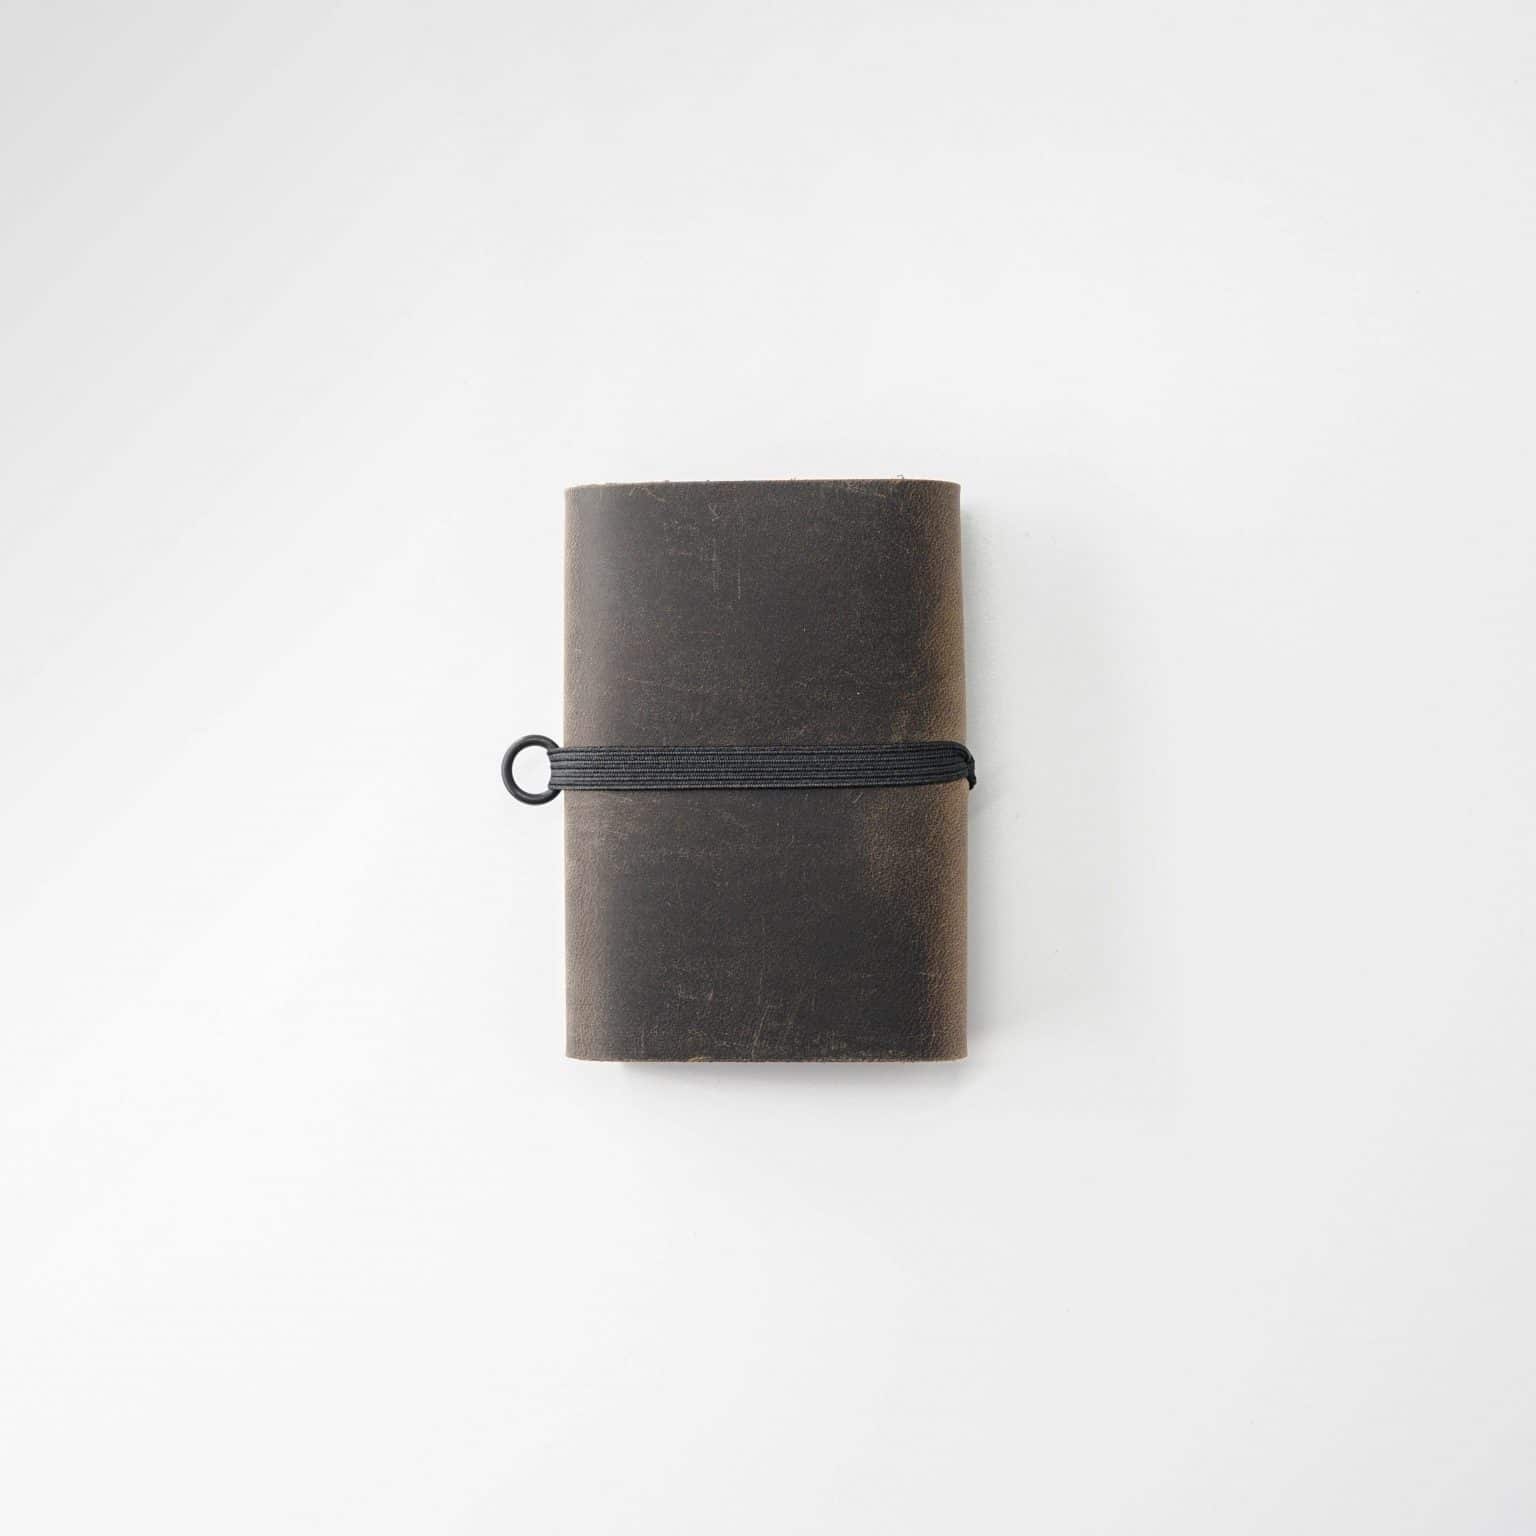 Portefeuille en cuir au format de poche pour un transport simplifié.